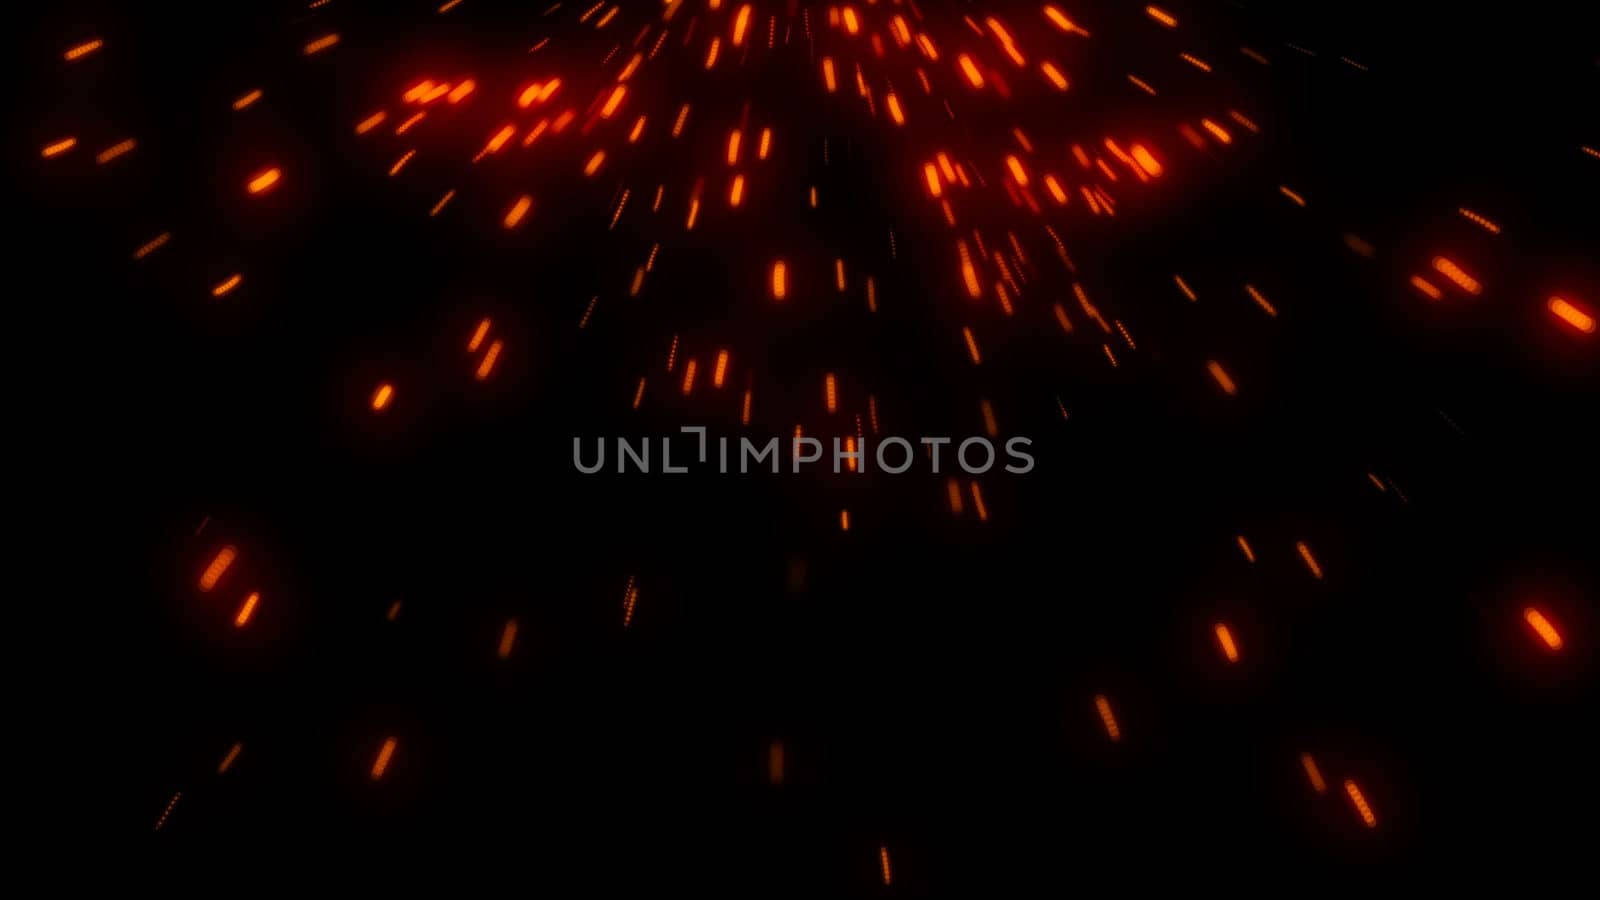 Hot glowing embers. Digital illustration. 3d rendering